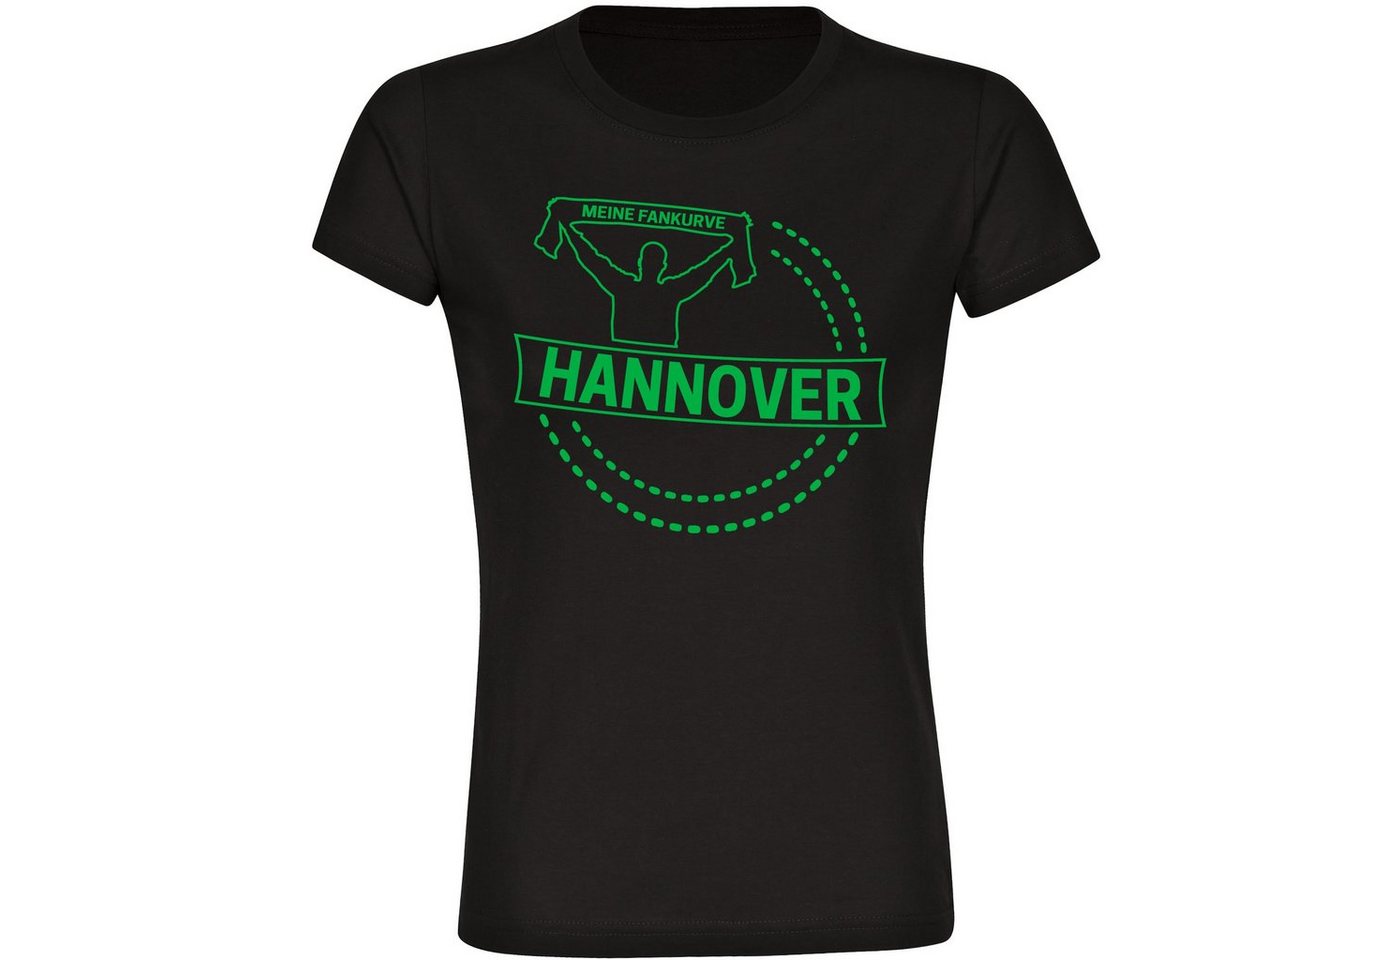 multifanshop T-Shirt Damen Hannover - Meine Fankurve - Frauen von multifanshop